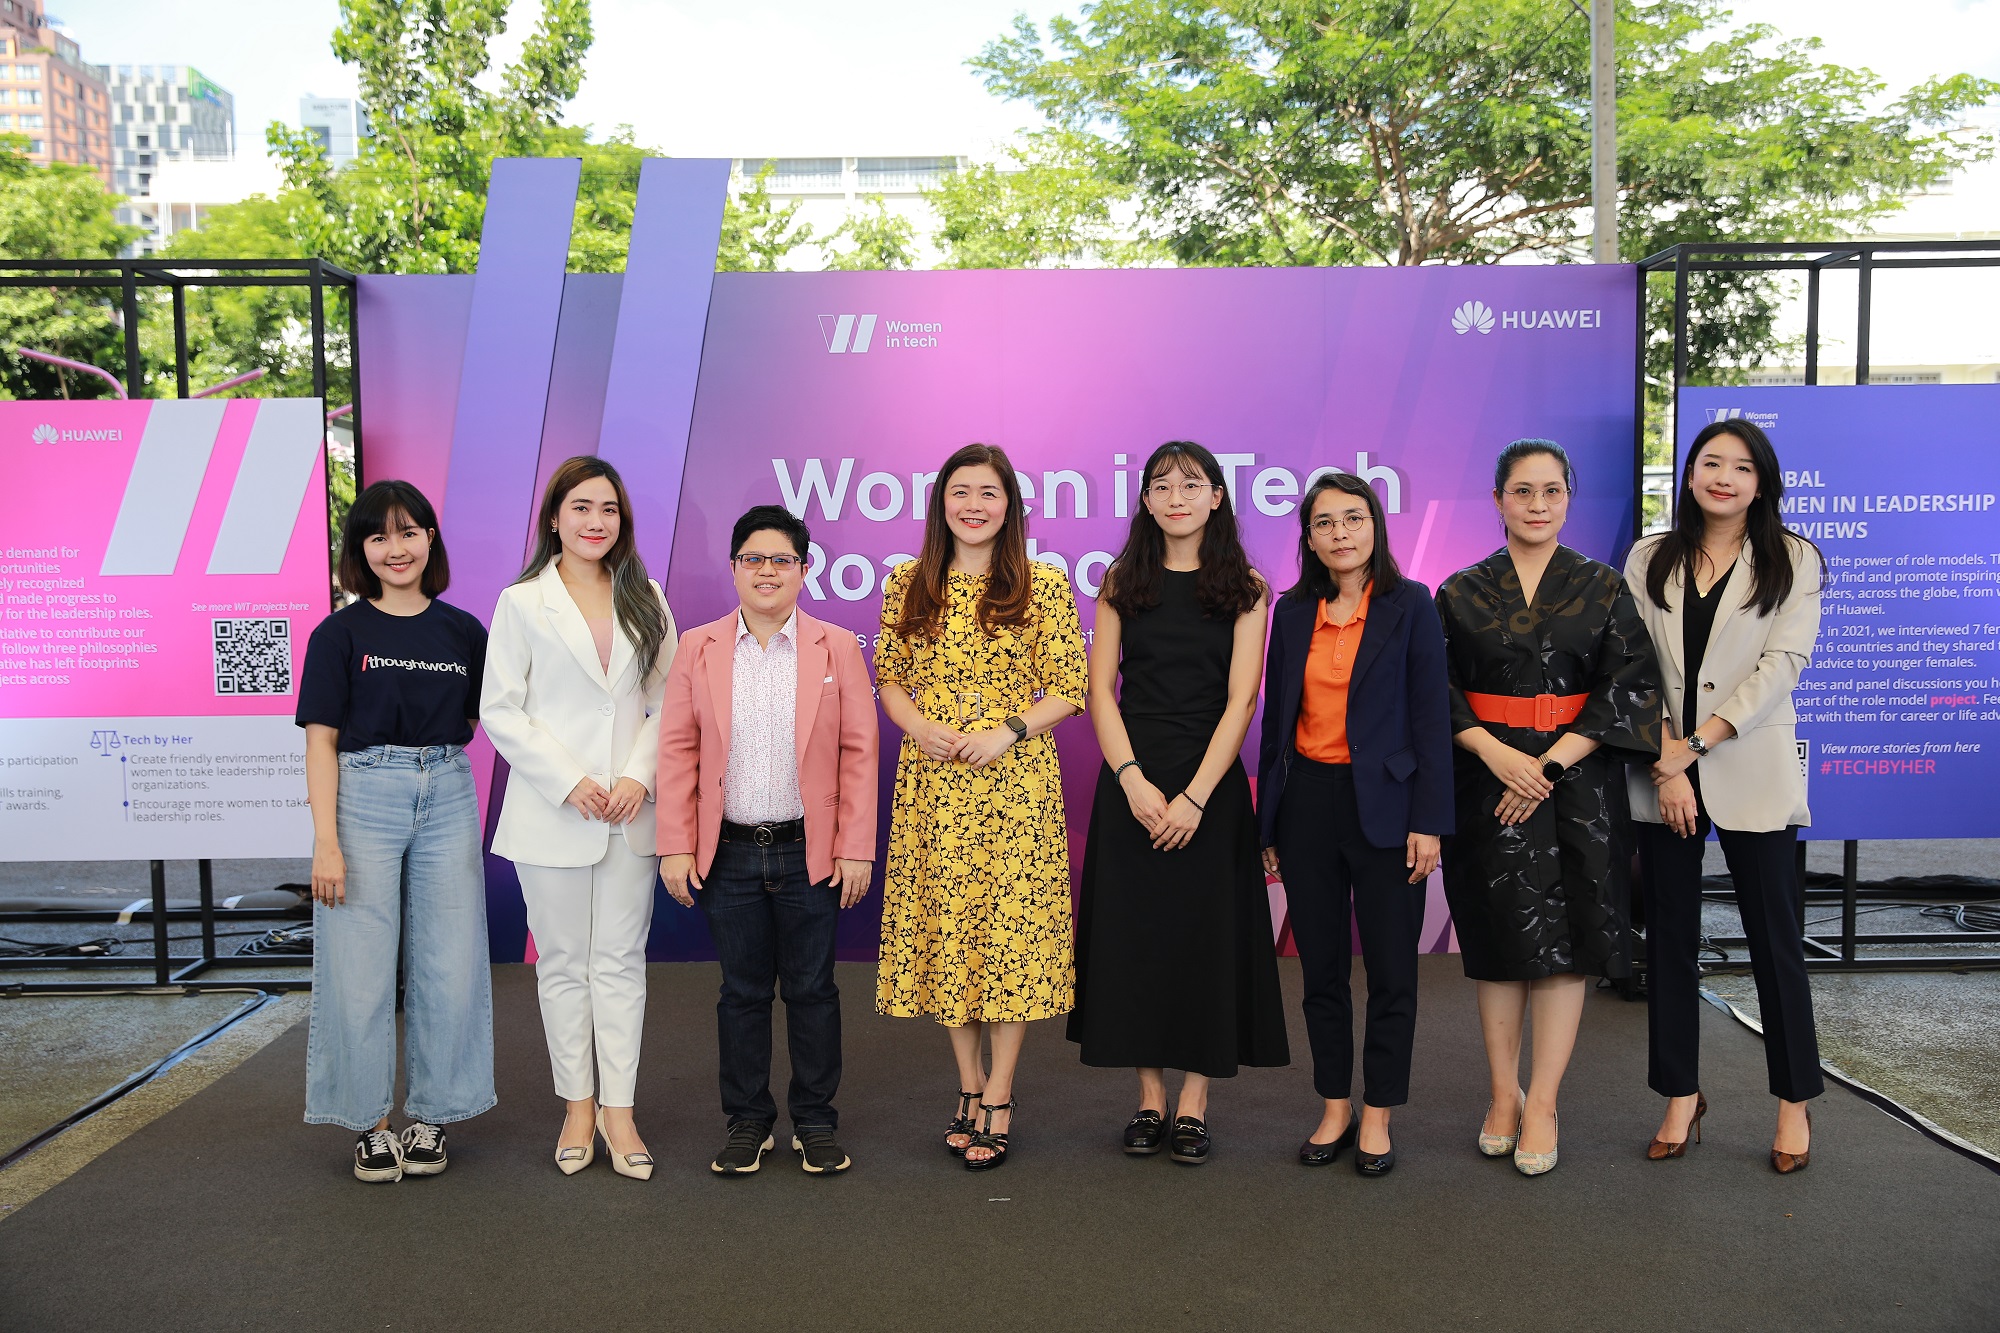 หัวเว่ย จัดงานโร้ดโชว์ Women in Tech ครั้งแรกในประเทศไทย